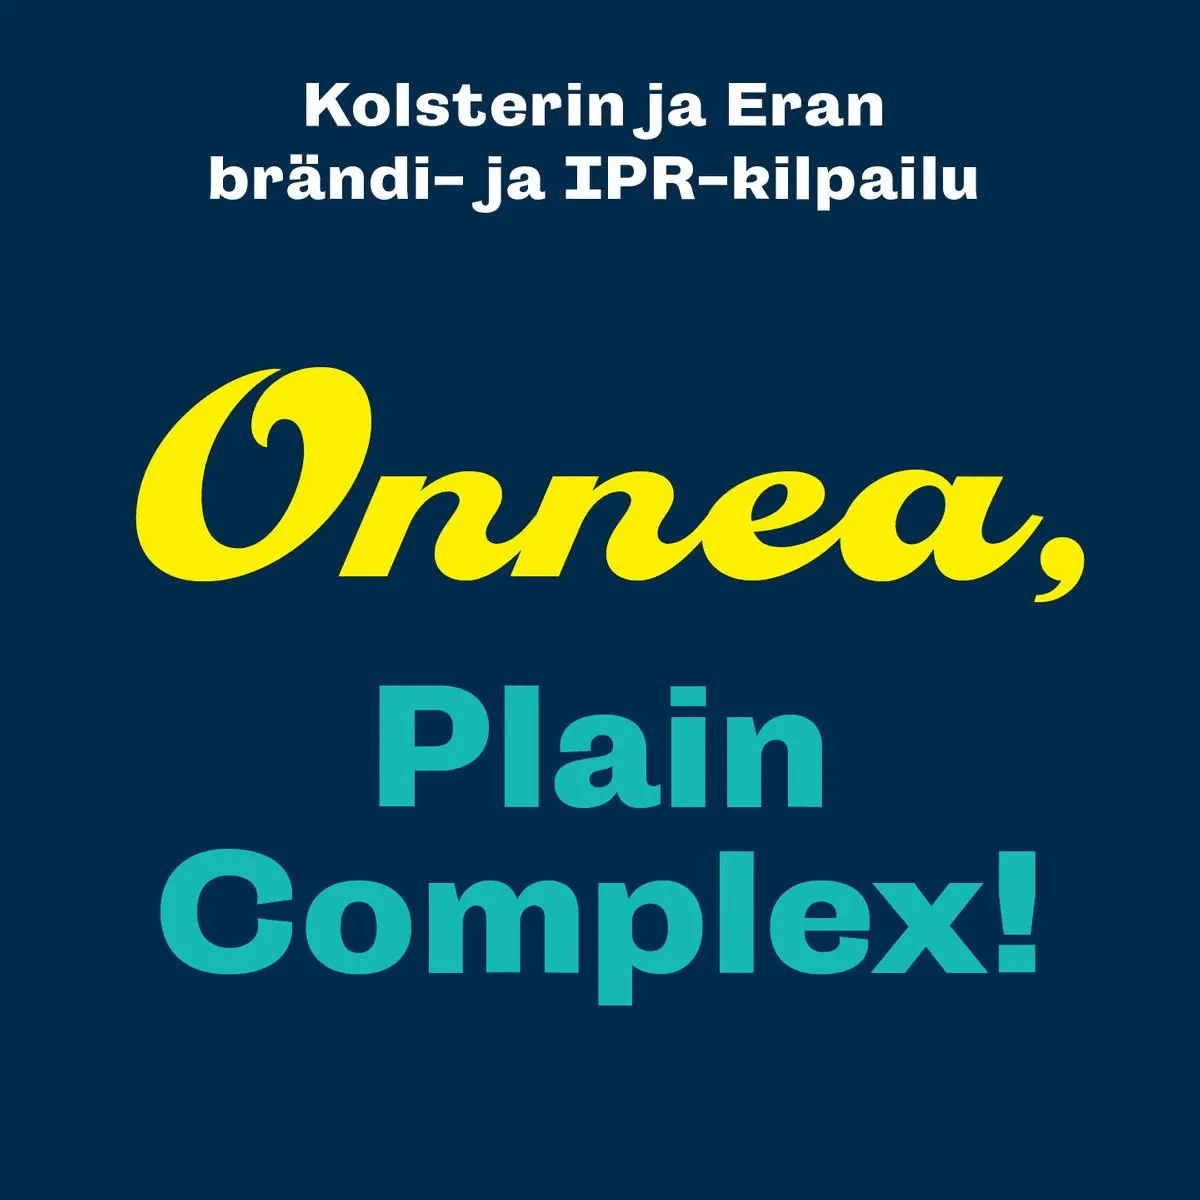 Plain Complex Oy voitti Kolsterin ja Eran brändi- ja IPR-kilpailun